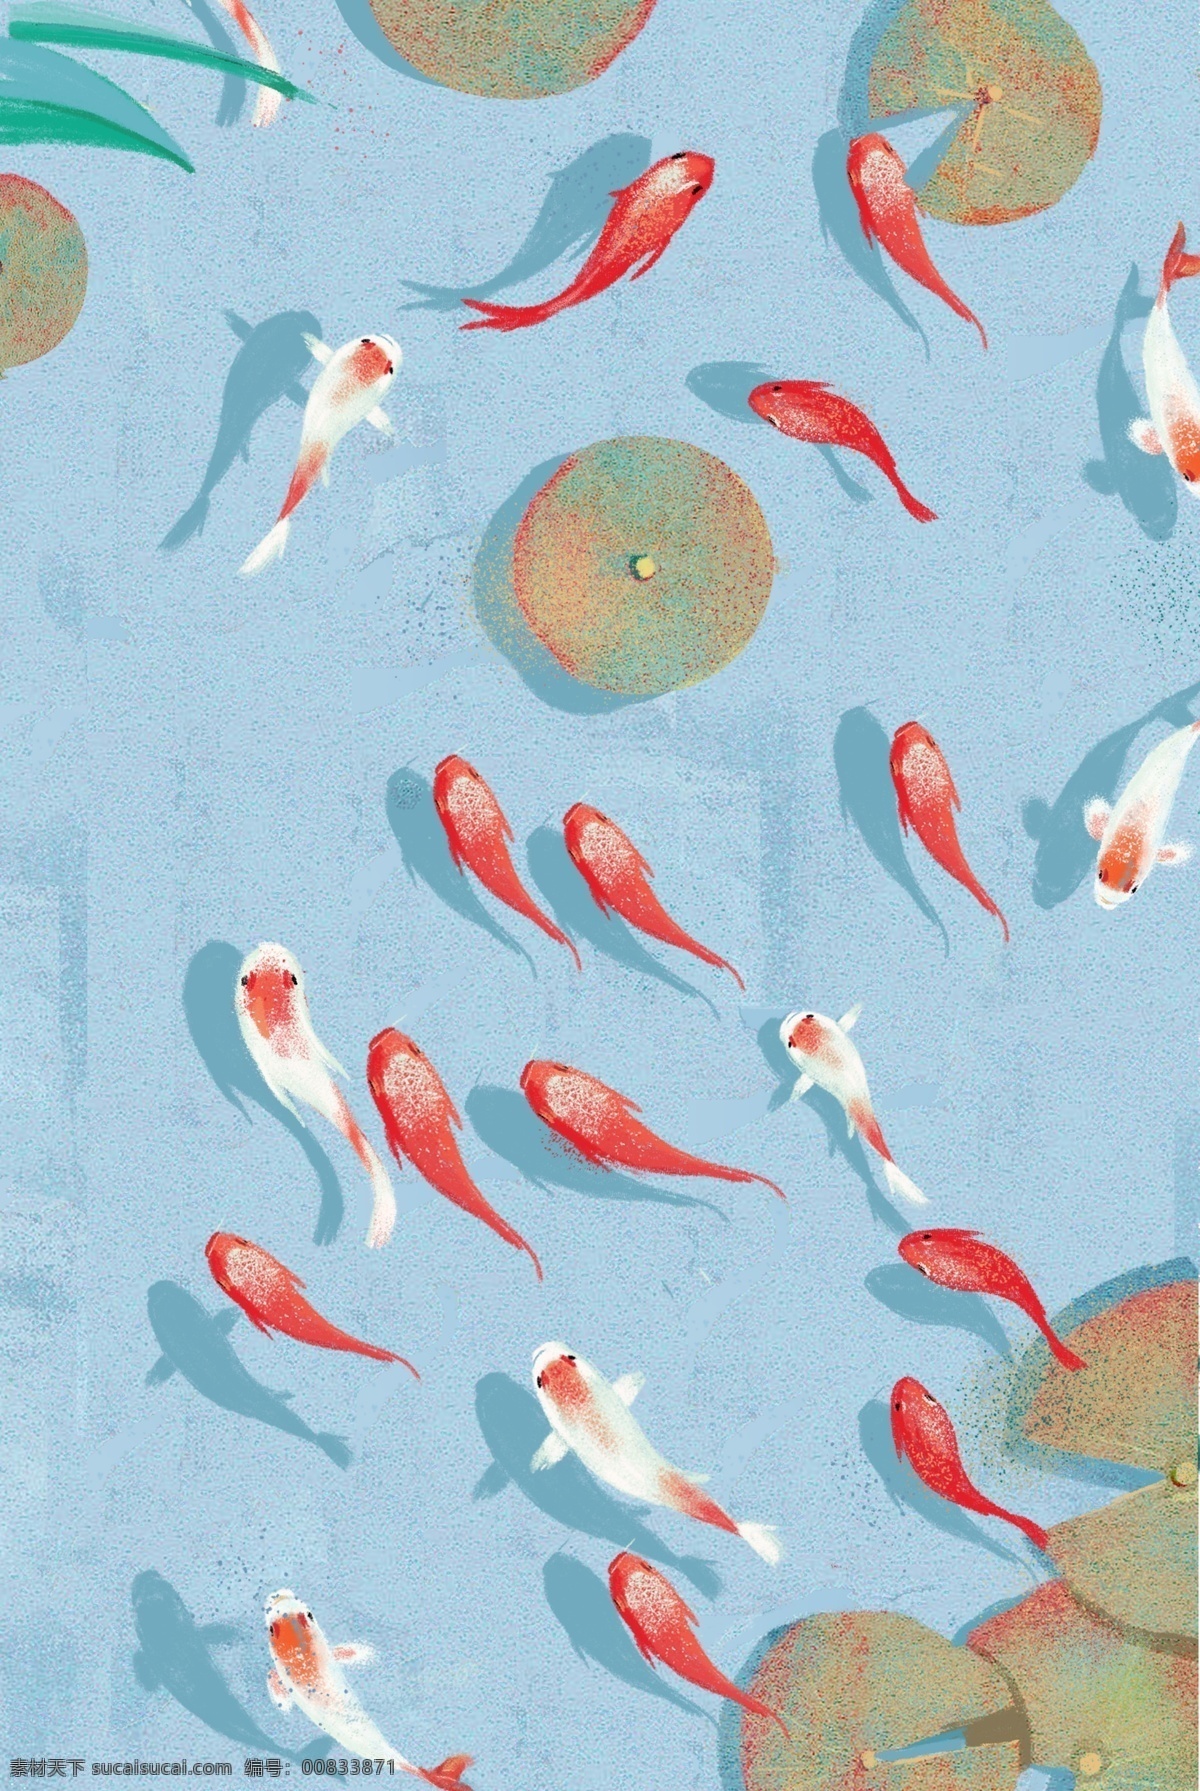 卡通 小 金鱼 免 抠 图 小鱼 鱼 卡通图案 卡通插画 绿色荷叶 植物 红色的小鱼 小动物 卡通小金鱼 免抠图